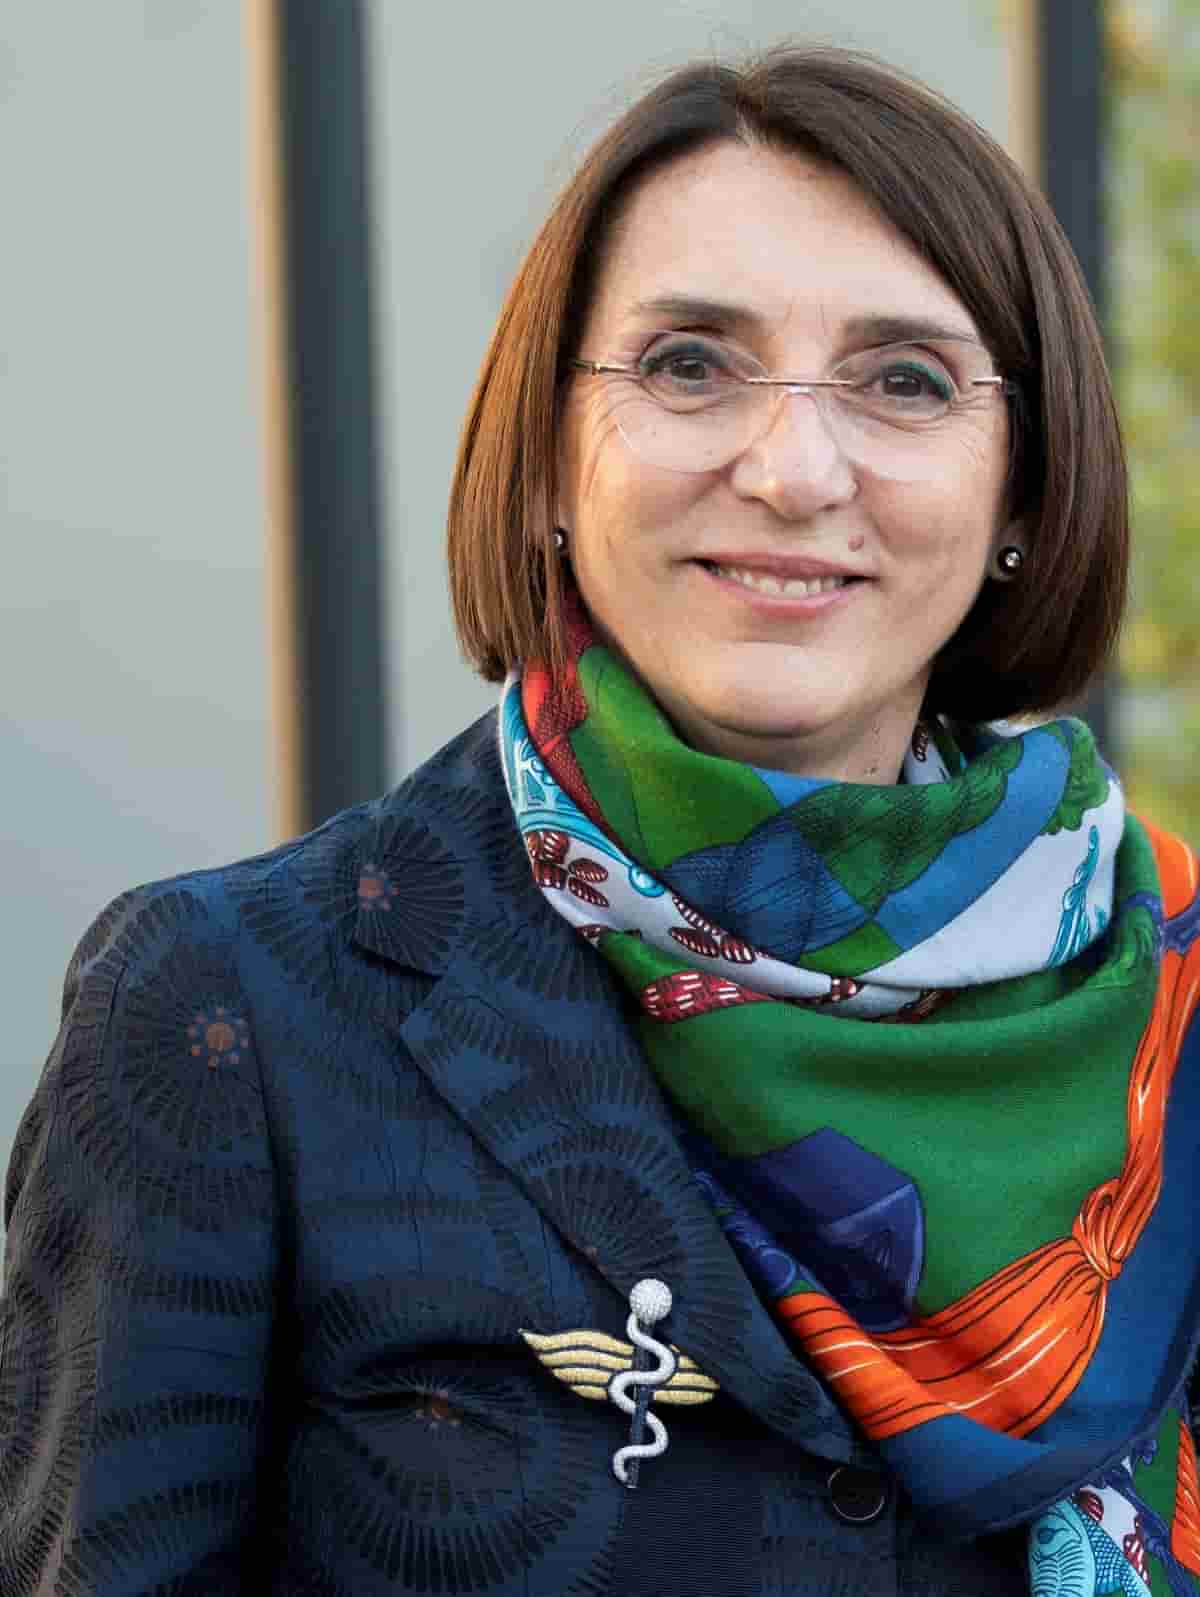 Donne d'impresa, Marisa Delgrosso: il "contesto fluido" del post covid impone capacità di reazione rapidissima